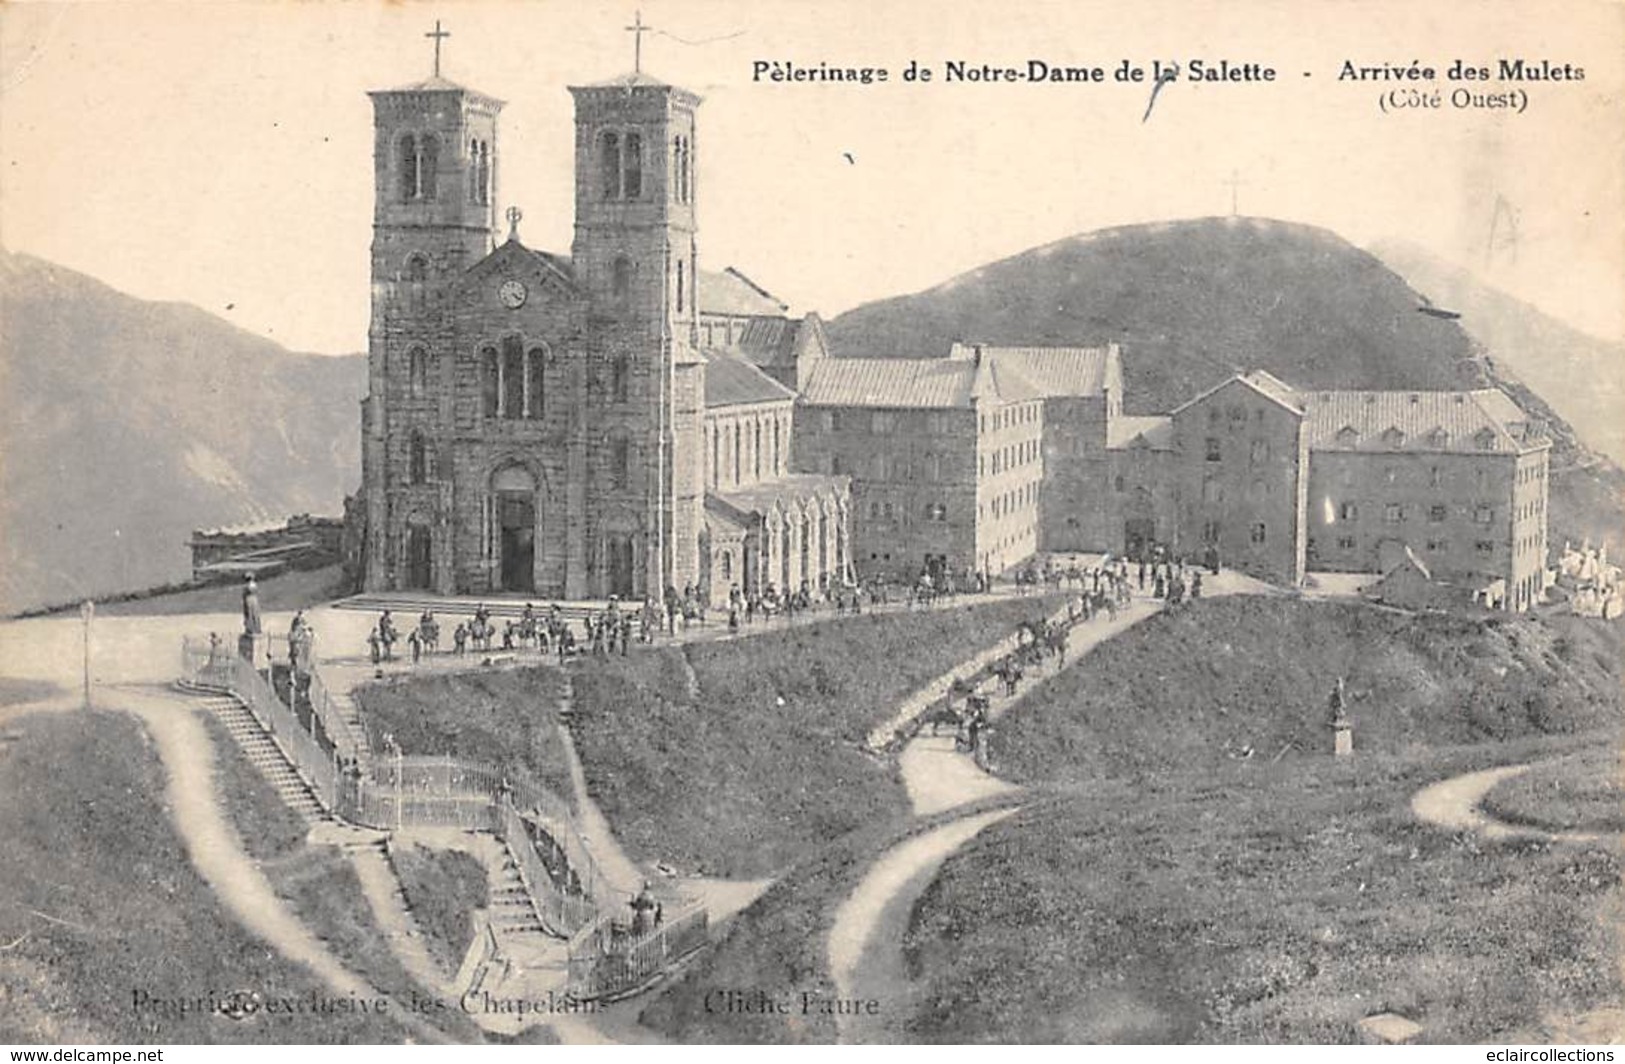 Corps      38      Lot de 6 cartes de Pèlerinage a Notre Dame de La Salette     (Voir scan)